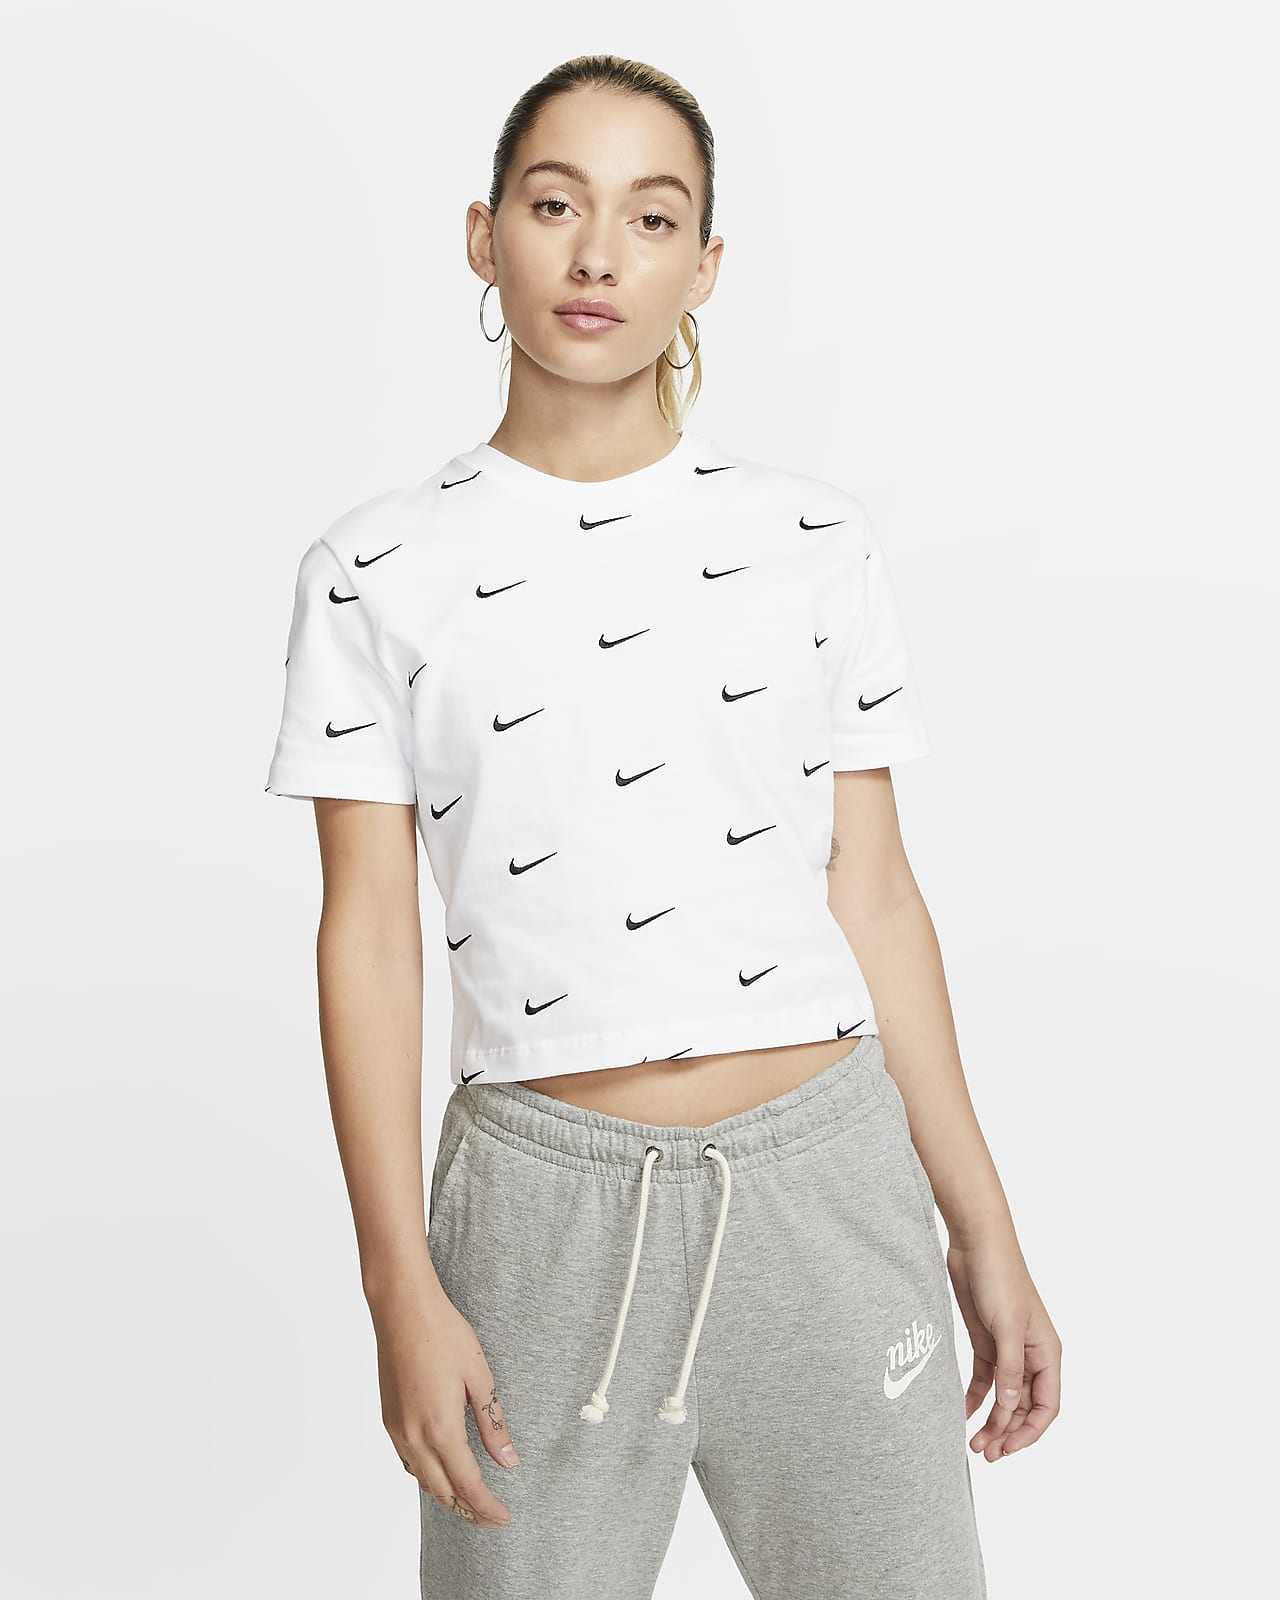 Nike Women's Swoosh Logo T-Shirt. Nike ID